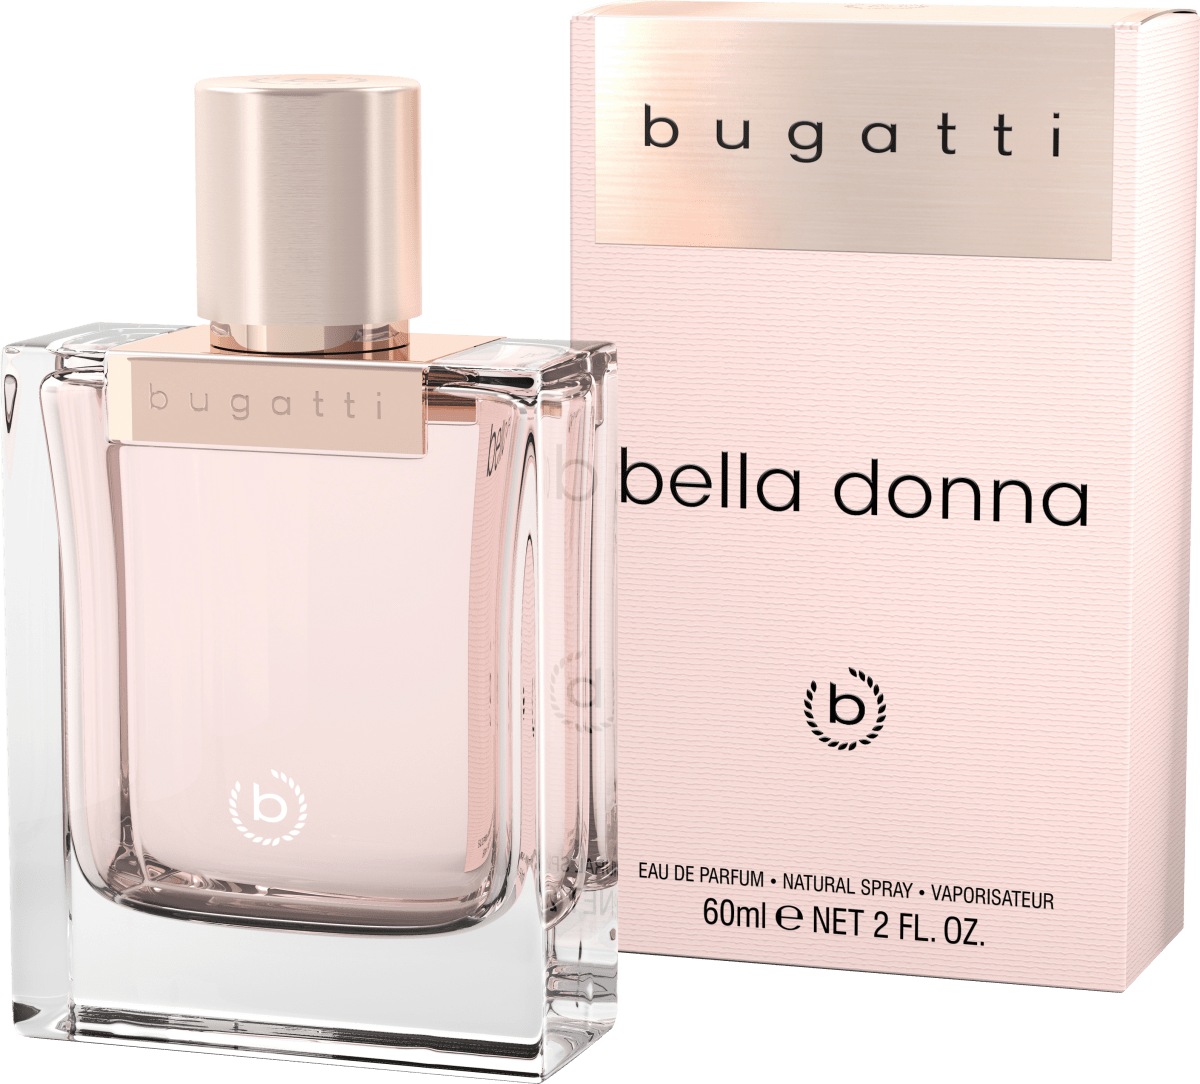 ml online 60 Parfum, donna Bella Eau de dauerhaft kaufen bugatti günstig